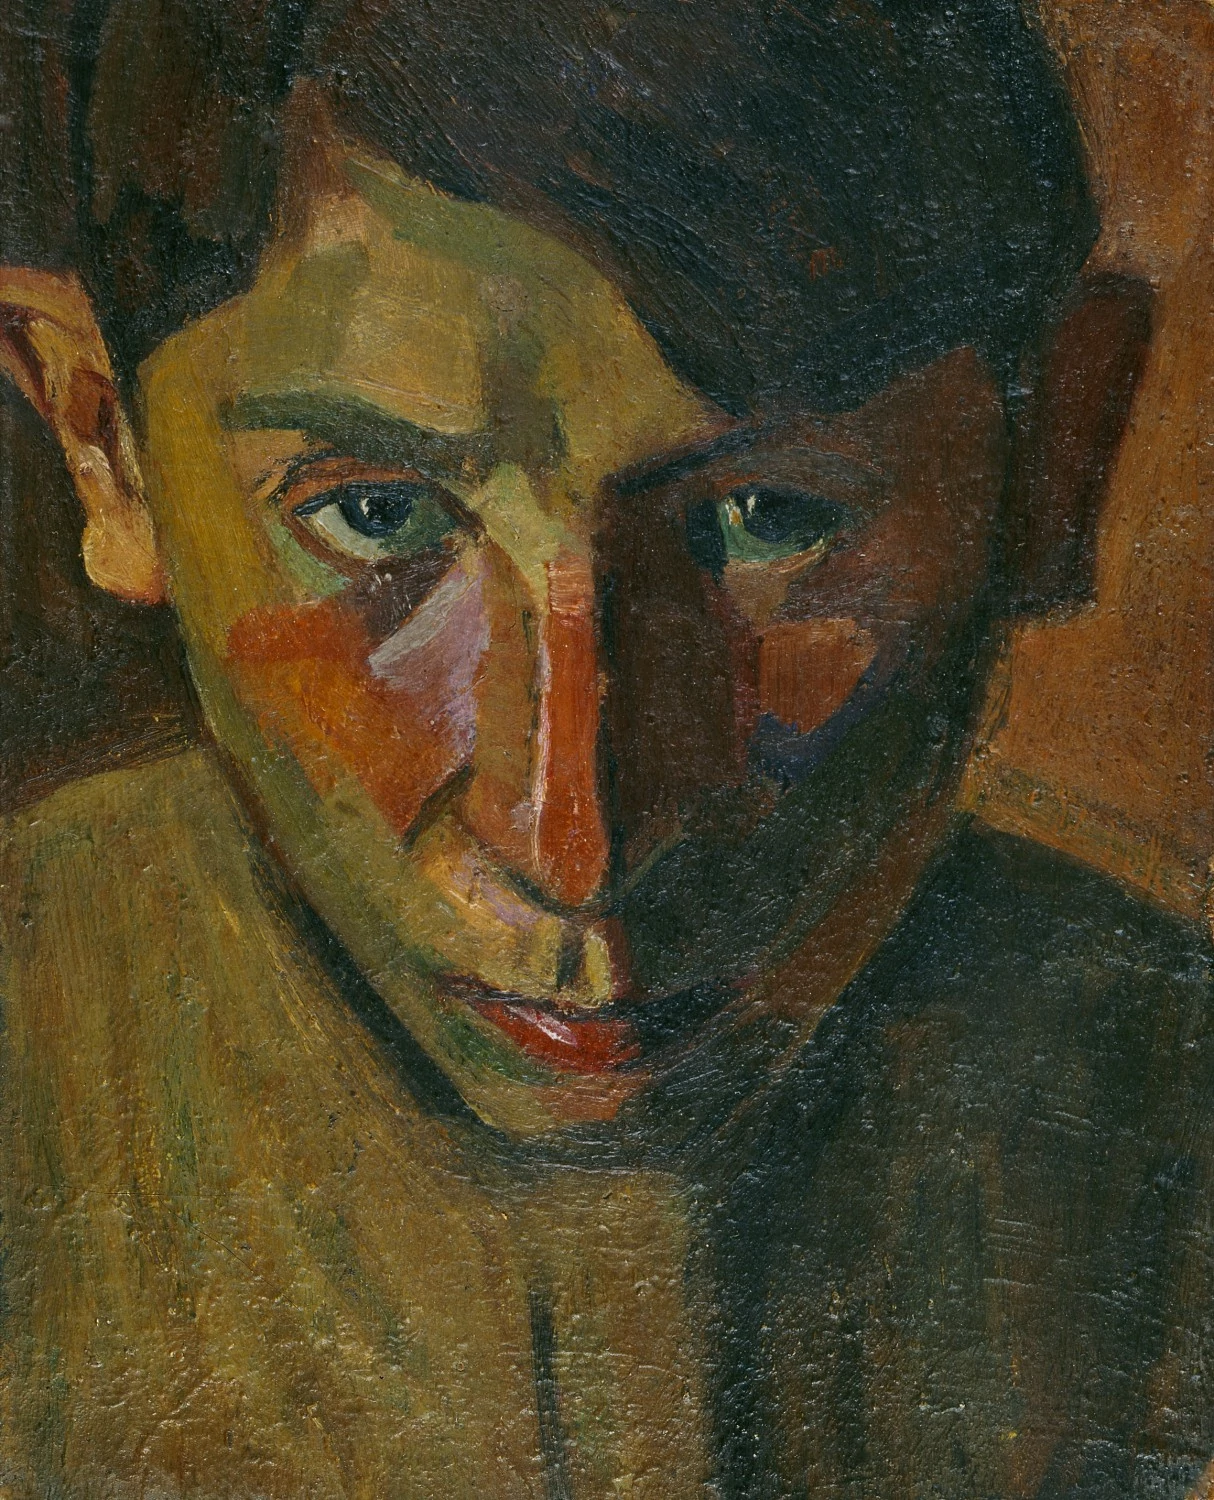 Self-portrait, Grégoire Michonze